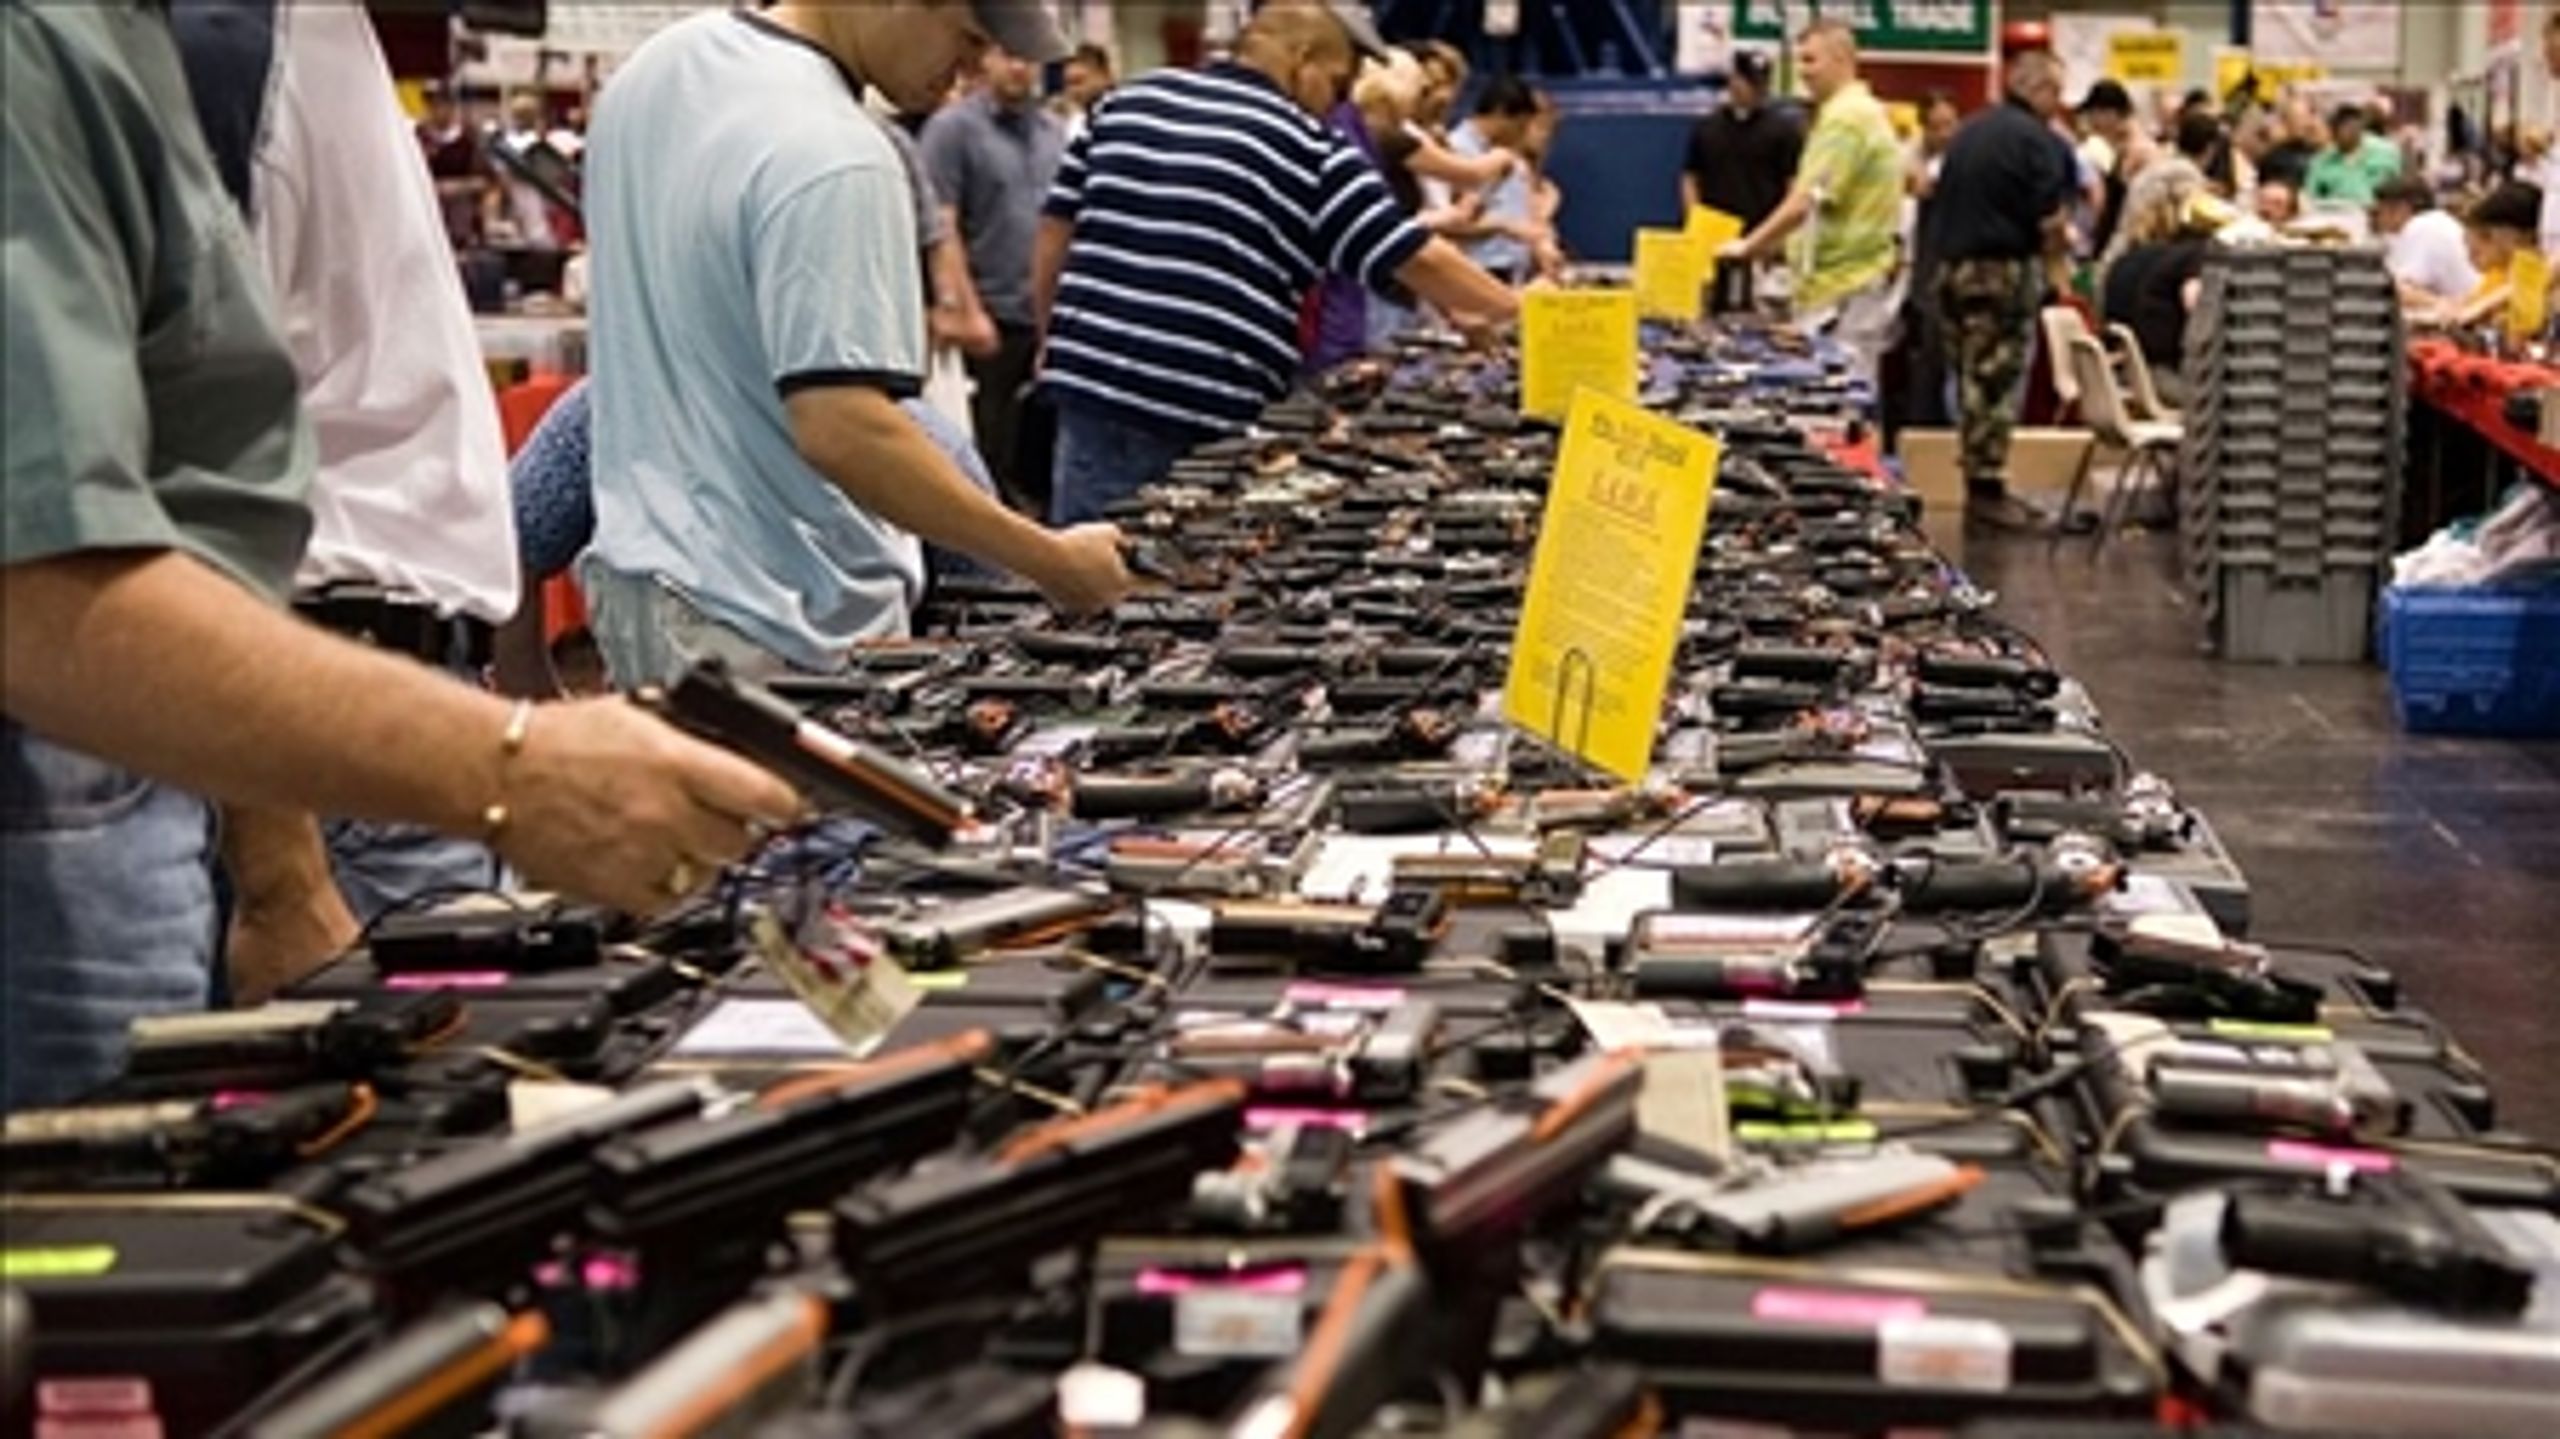 Salg af våben på de såkaldte gunshows er blandt det, som præsident Obama vil regulere i sin plan om en strengere våbenlov.